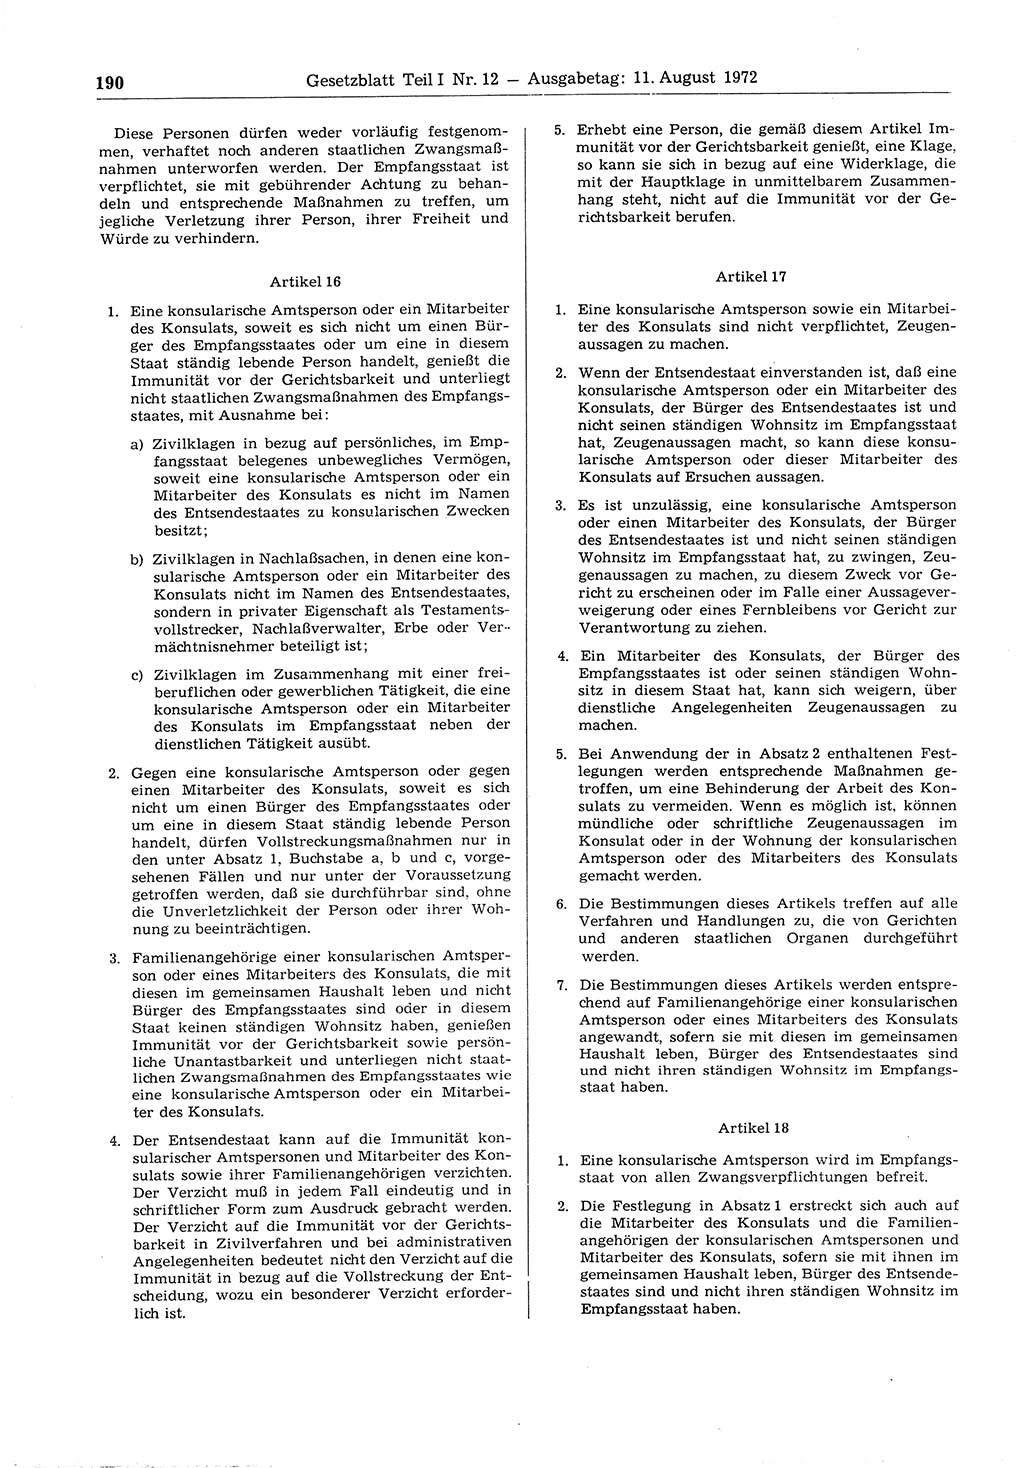 Gesetzblatt (GBl.) der Deutschen Demokratischen Republik (DDR) Teil Ⅰ 1972, Seite 190 (GBl. DDR Ⅰ 1972, S. 190)